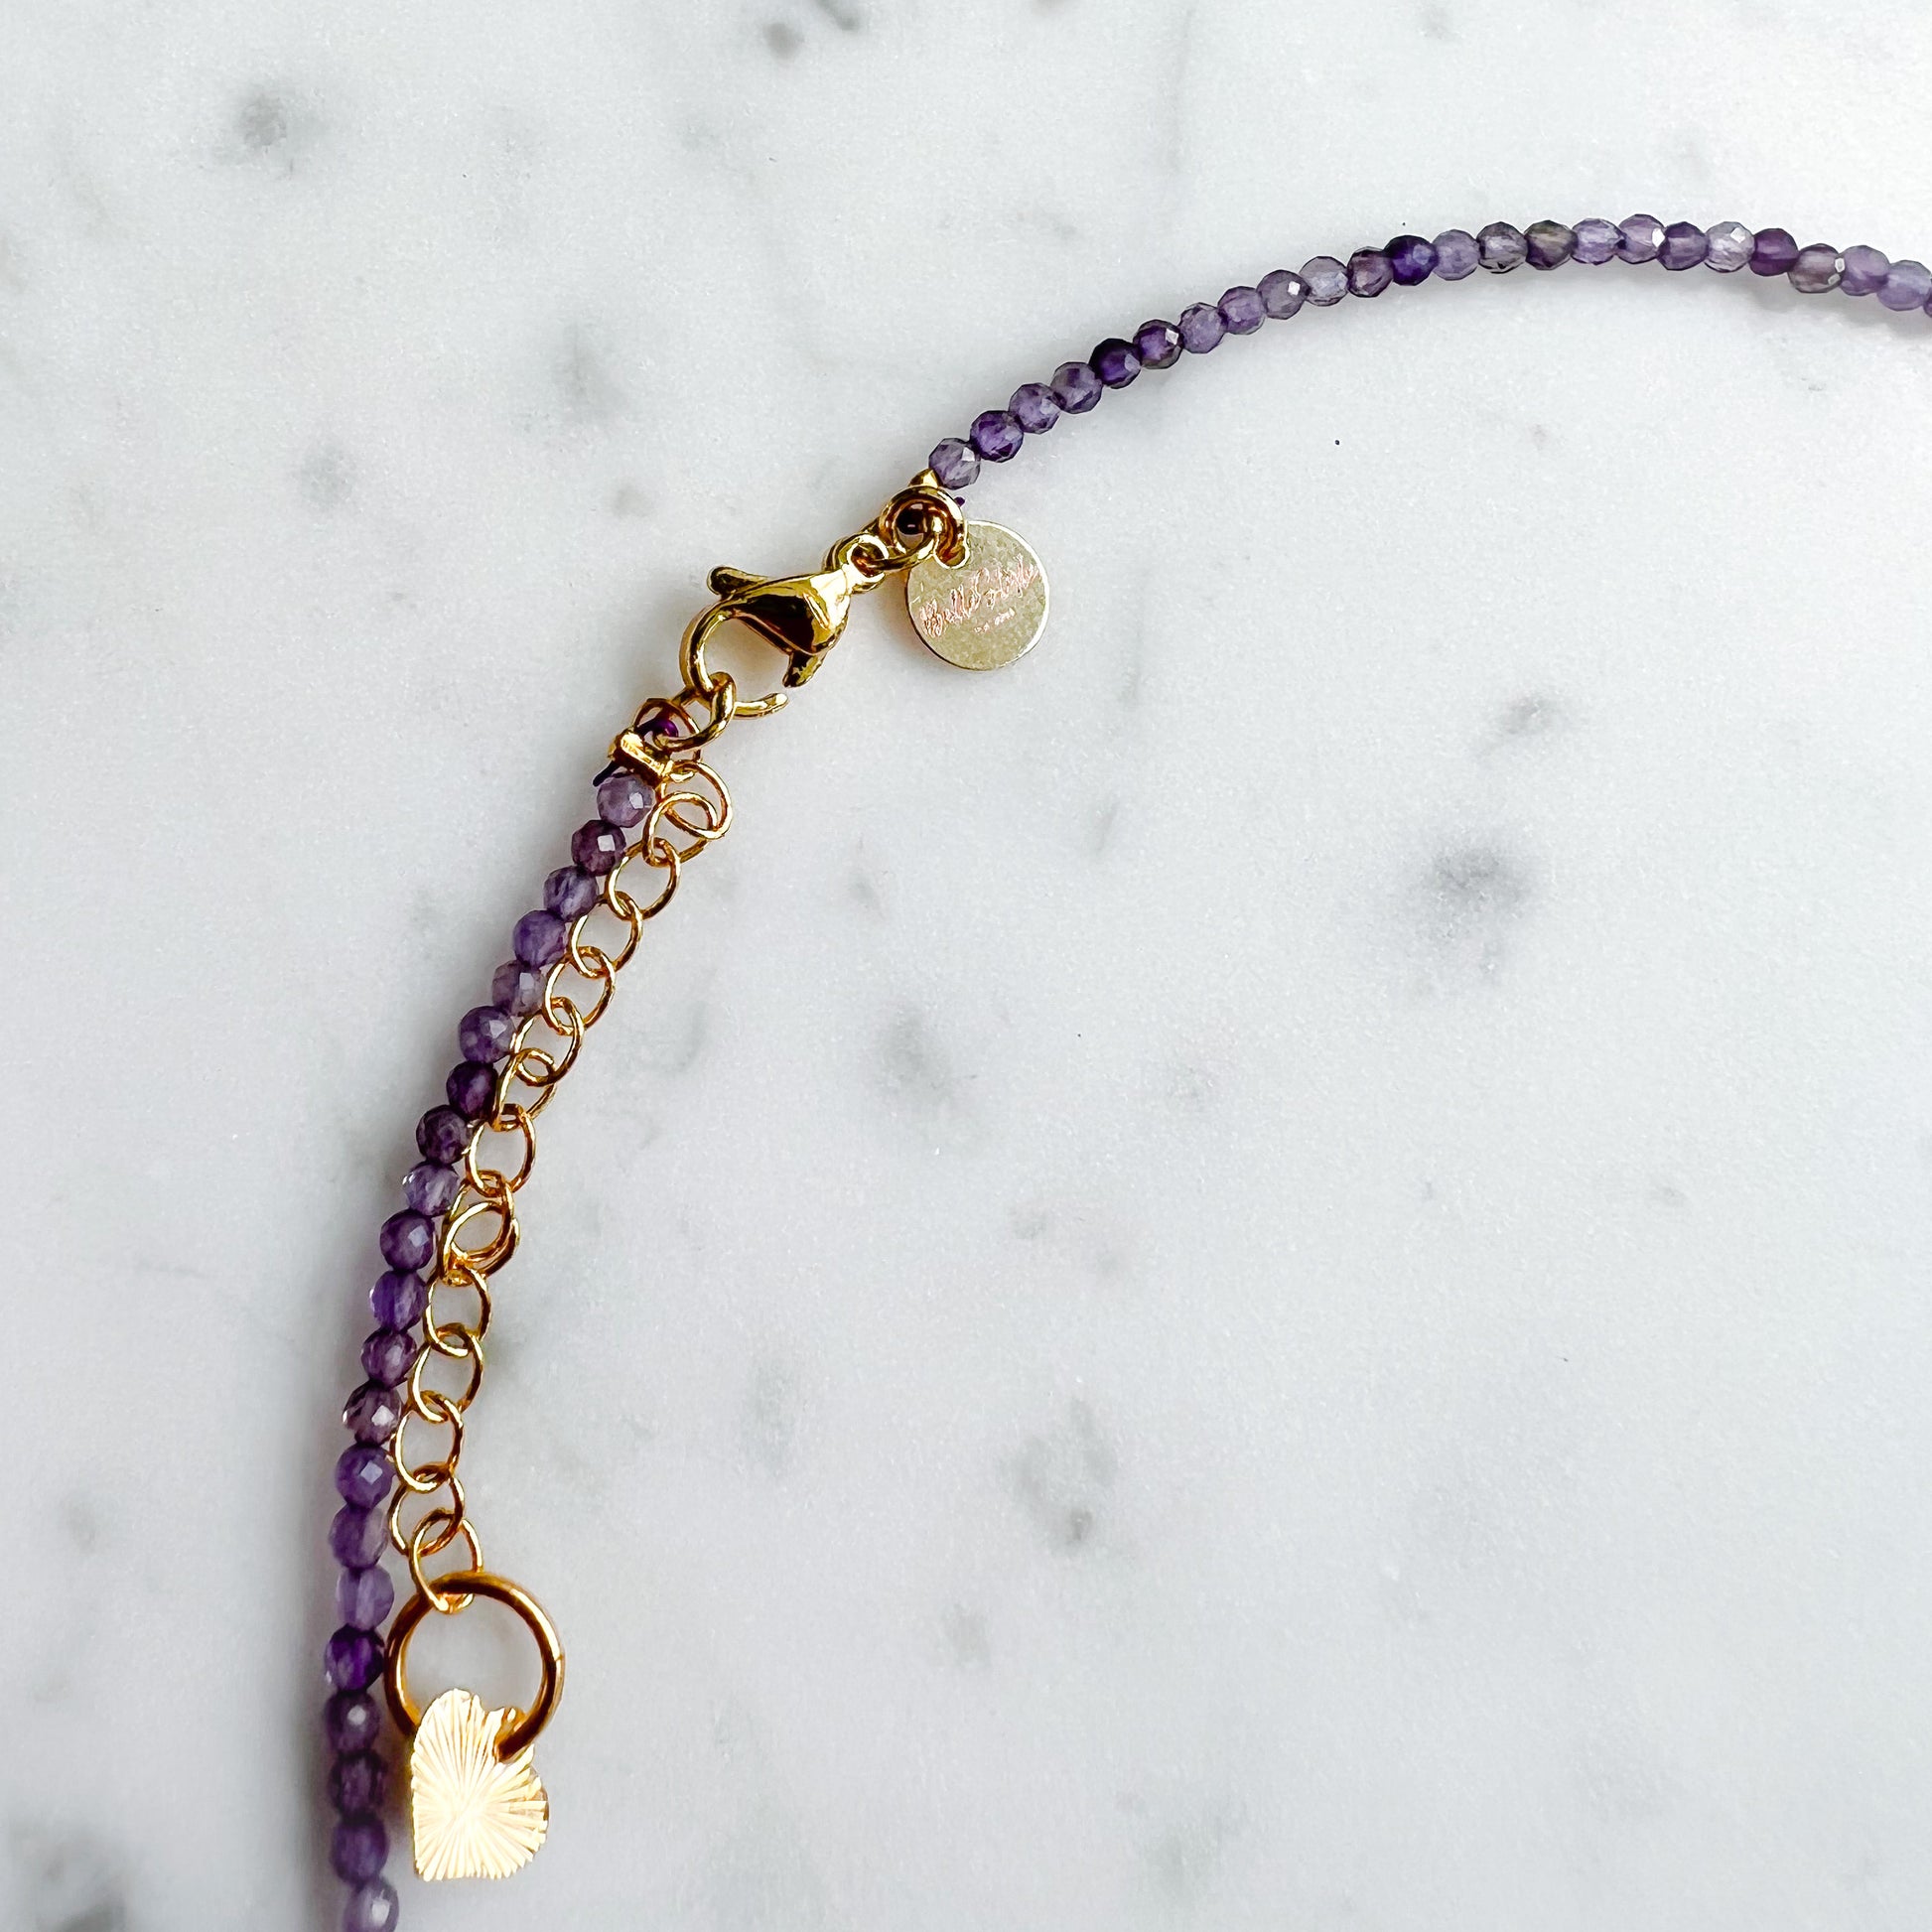 Calm Choker Semi-precious Stone Necklace - BelleStyle